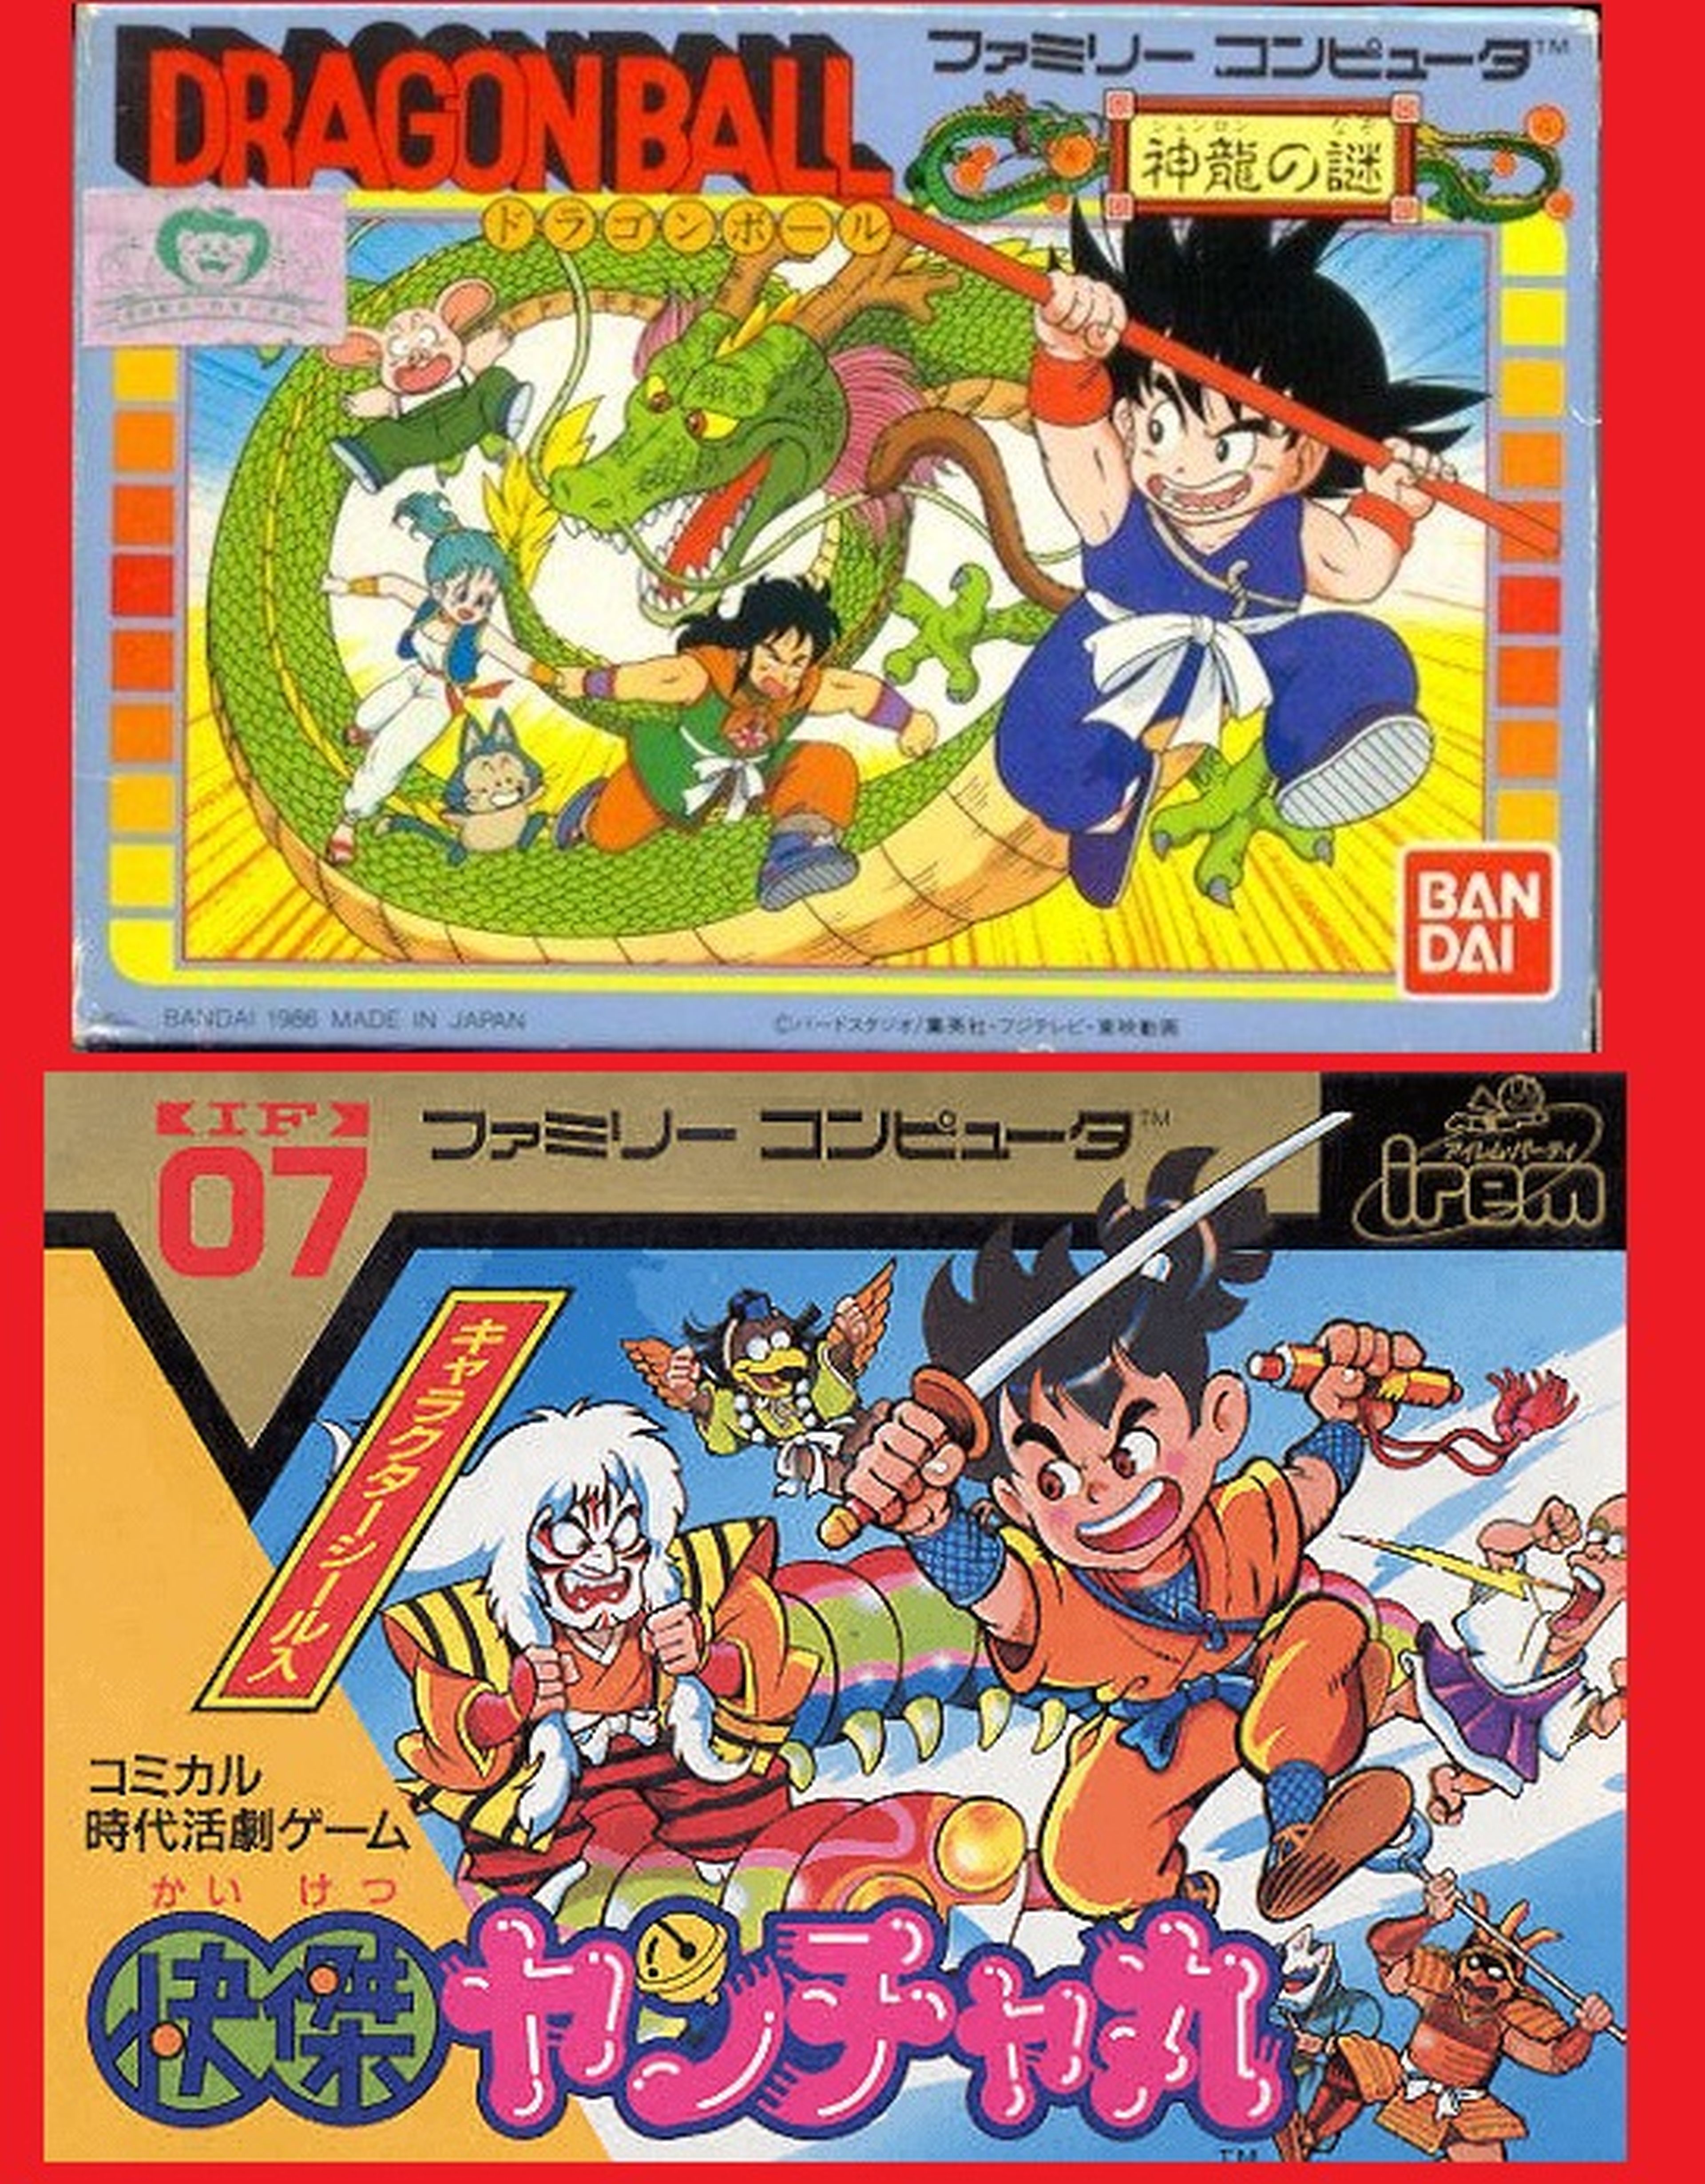 Dragon Ball - ¿Se plagió la portada de uno de sus primeros videojuegos de Nintendo?